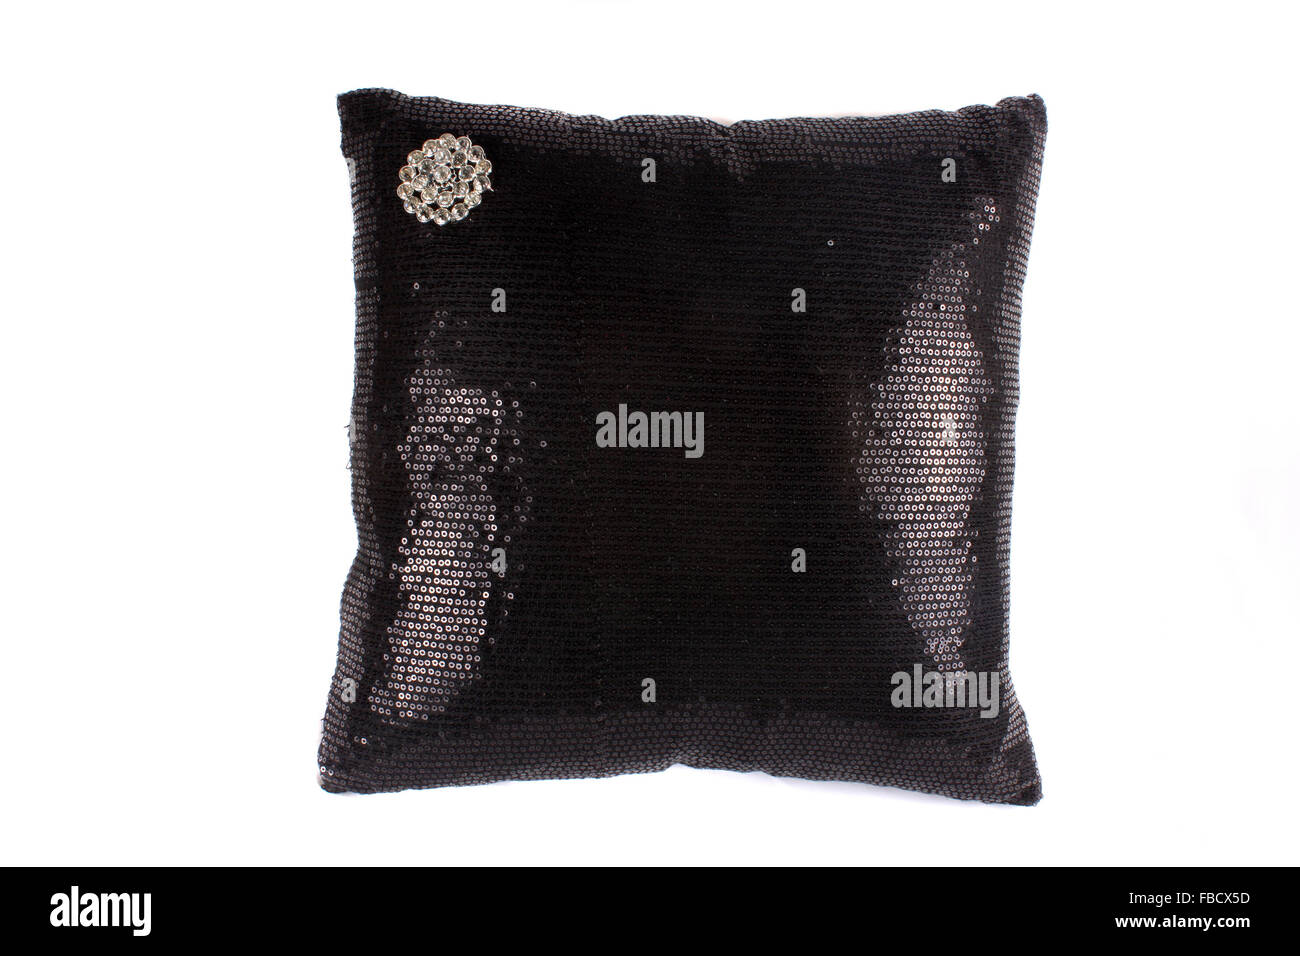 Ein luxuriöses Kissen gemacht mit einem Design von schwarzen Pailletten und eine Brosche. Stockfoto